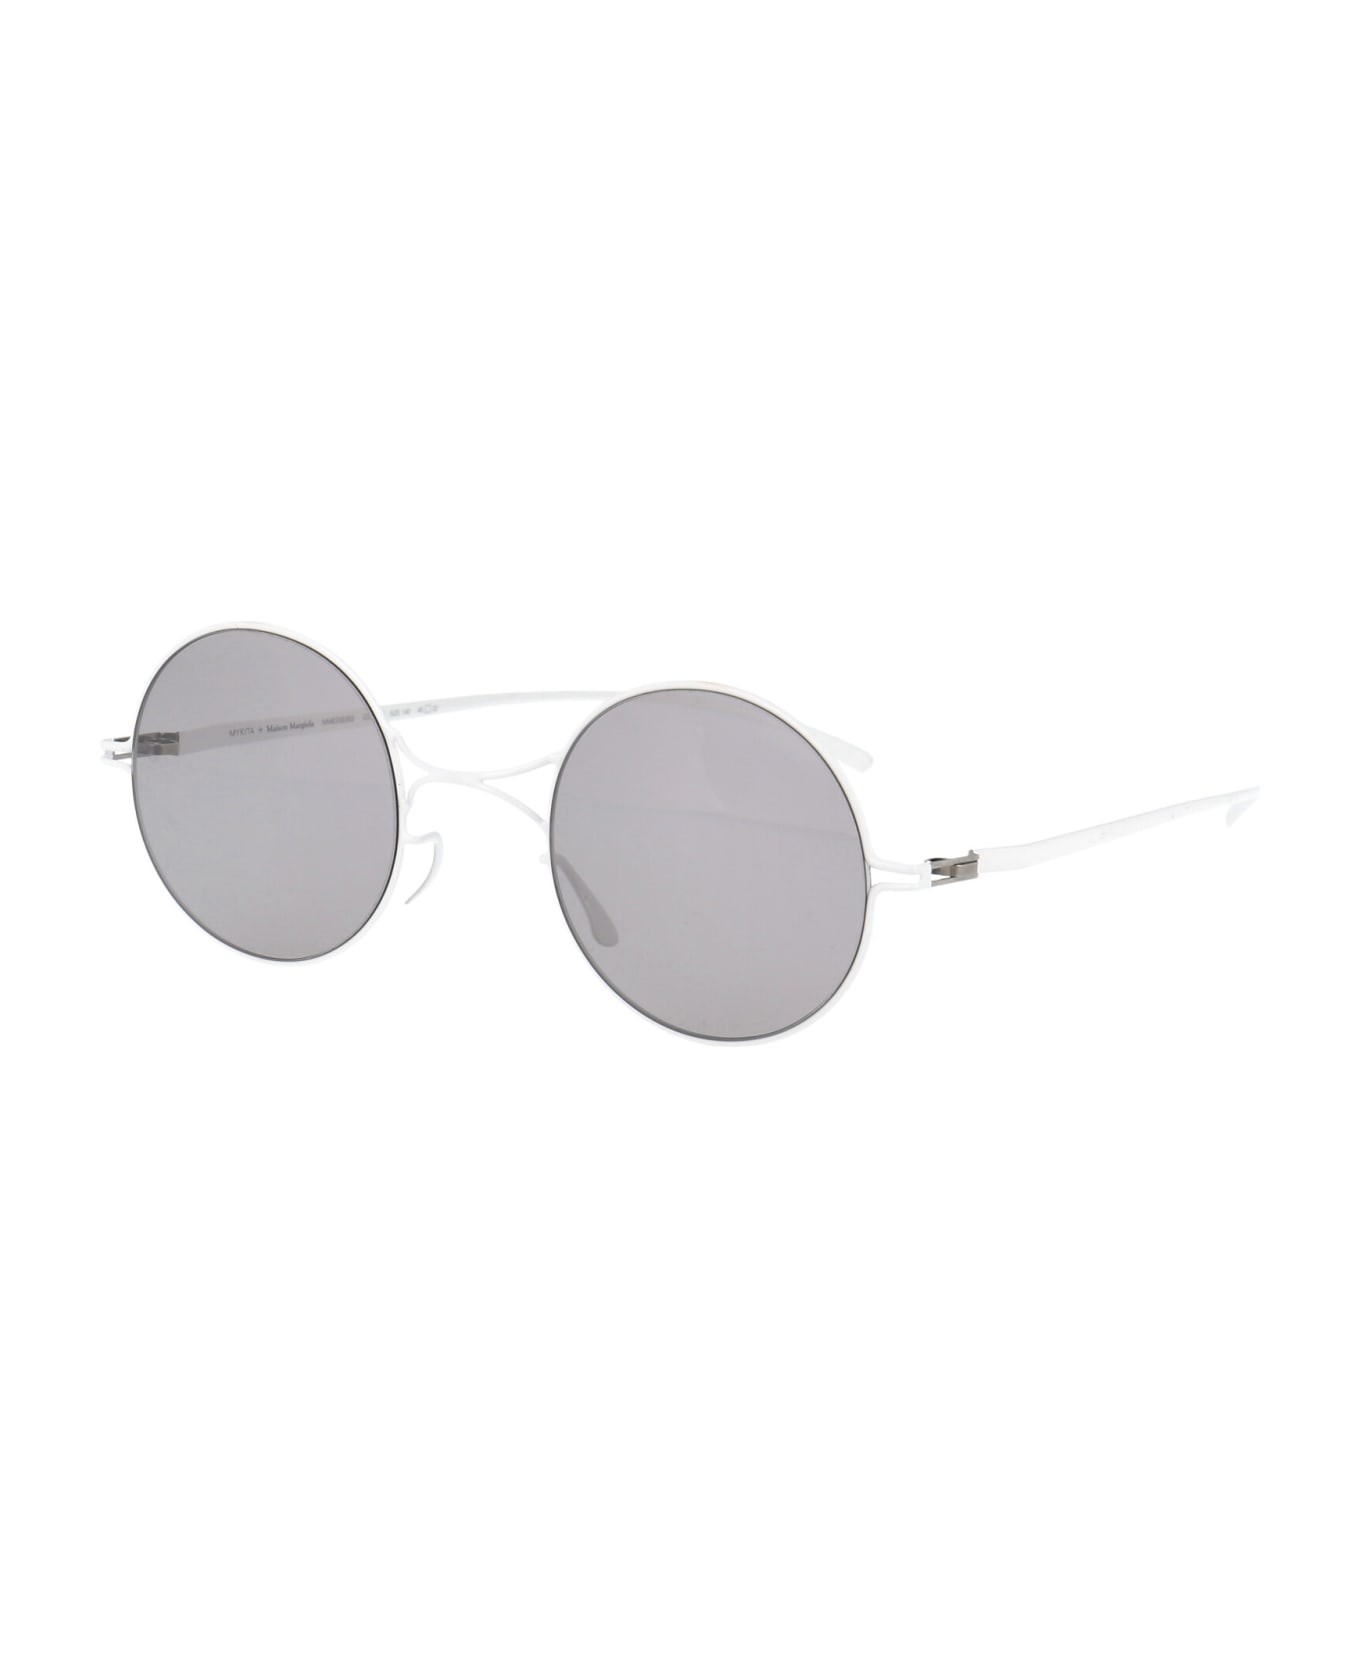 Mykita Mmesse002  Sunglasses - E13 WHITE Warmgrey Flash